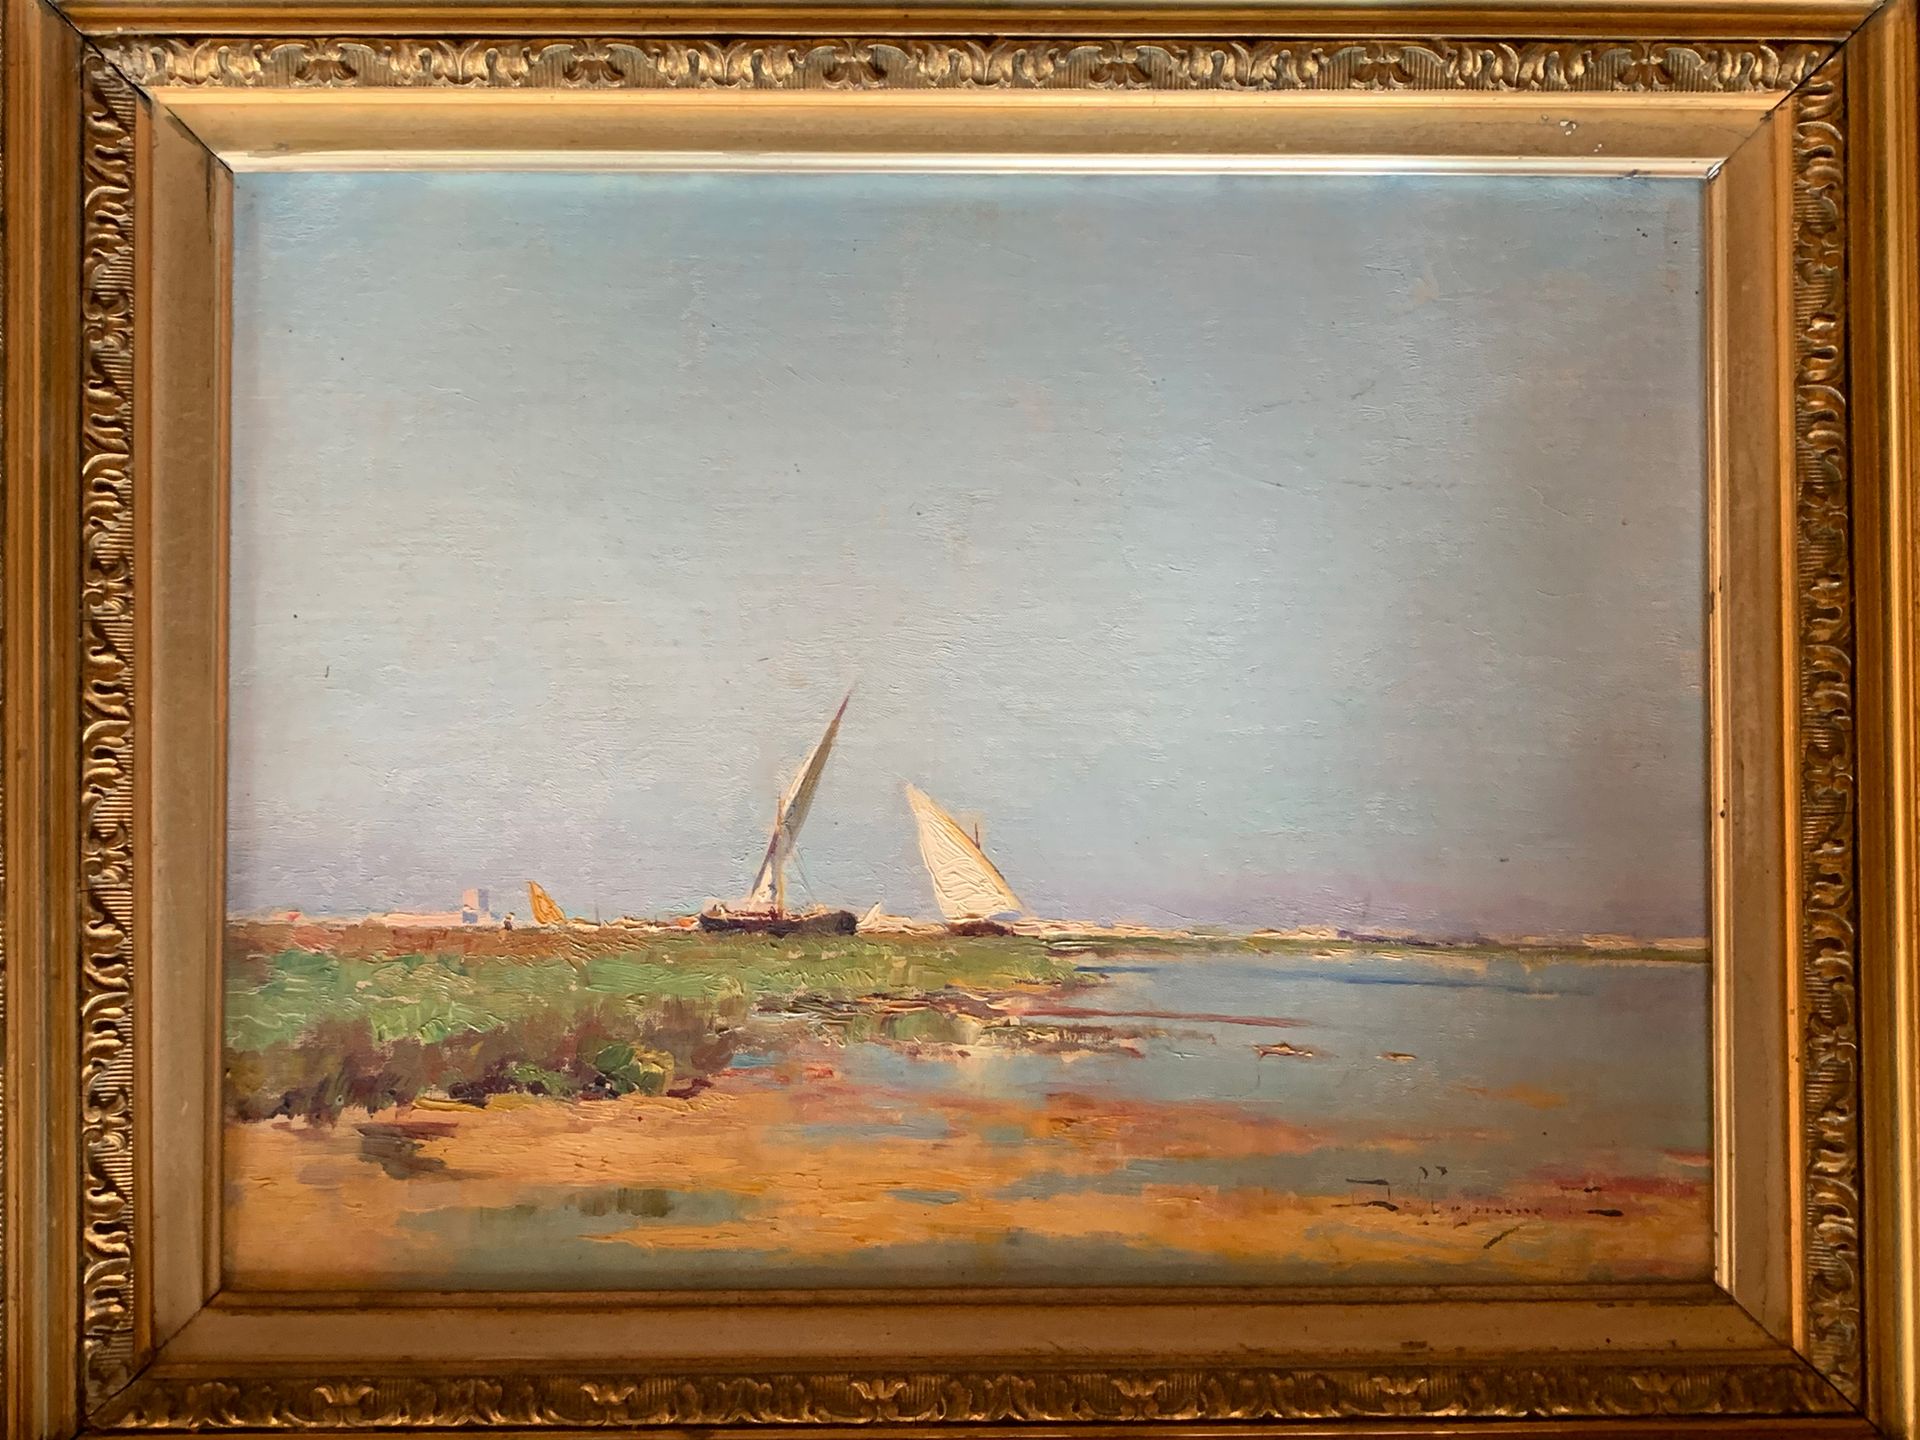 École Orientaliste 帆船
油画，右下角有模糊的签名
H.24.5 cm - W. 33 cm